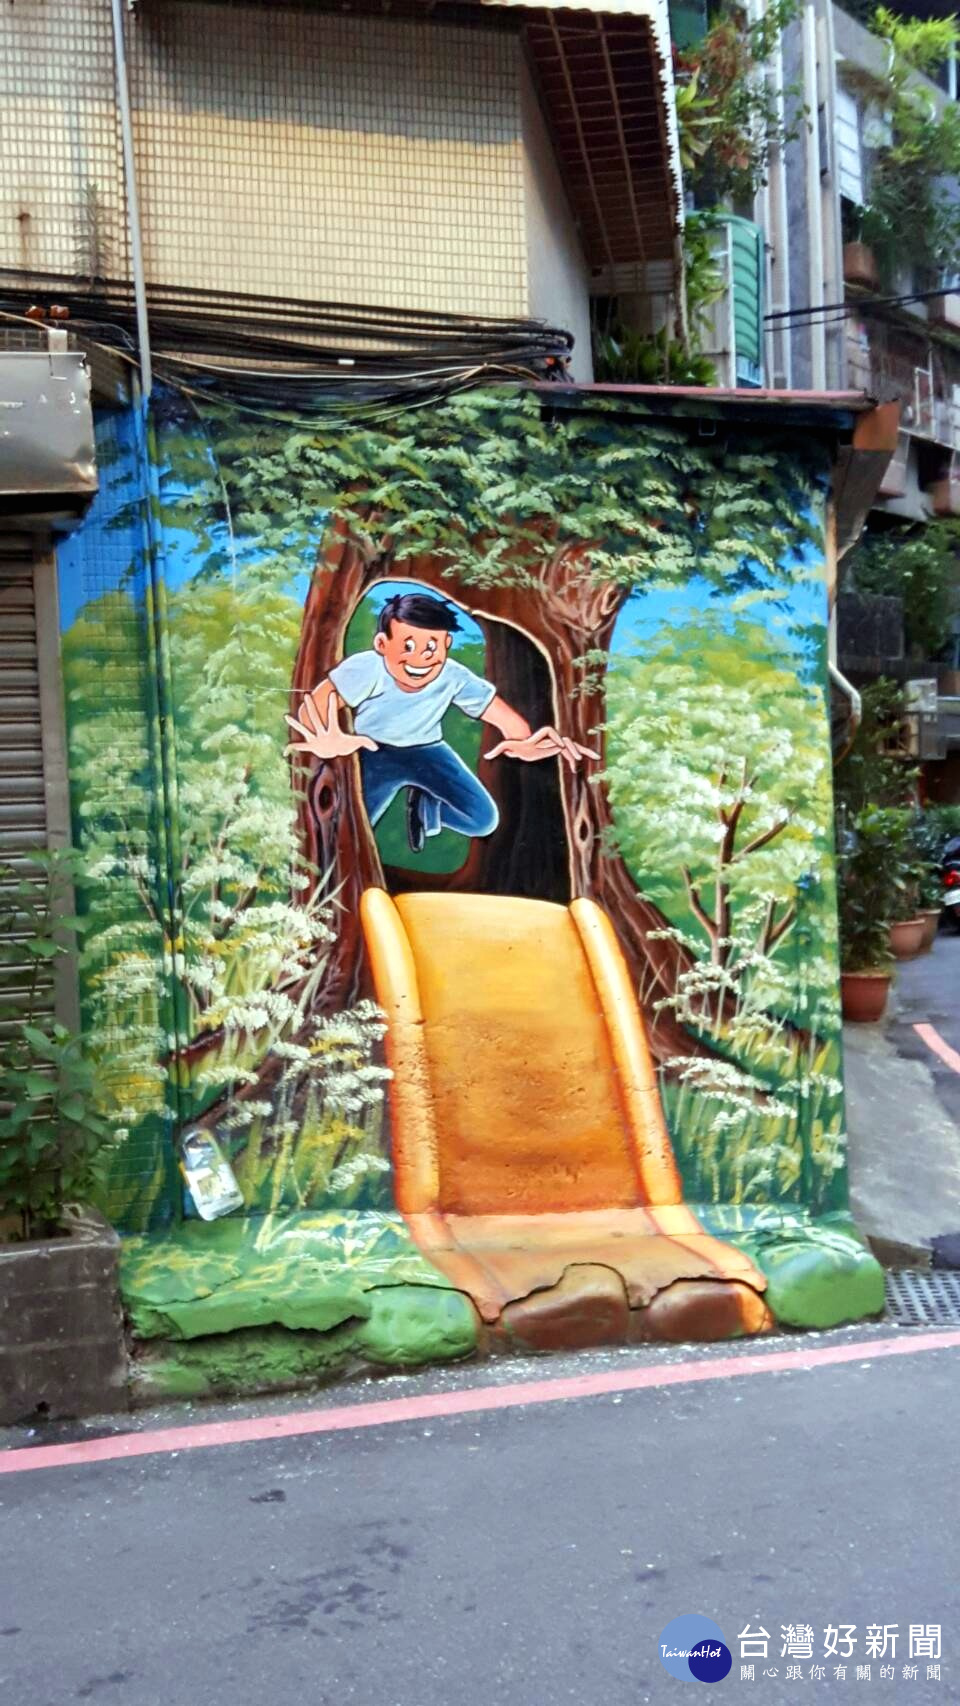 彩繪牆壁描繪小朋友開心的玩溜滑梯。（圖／記者黃竹佑攝）